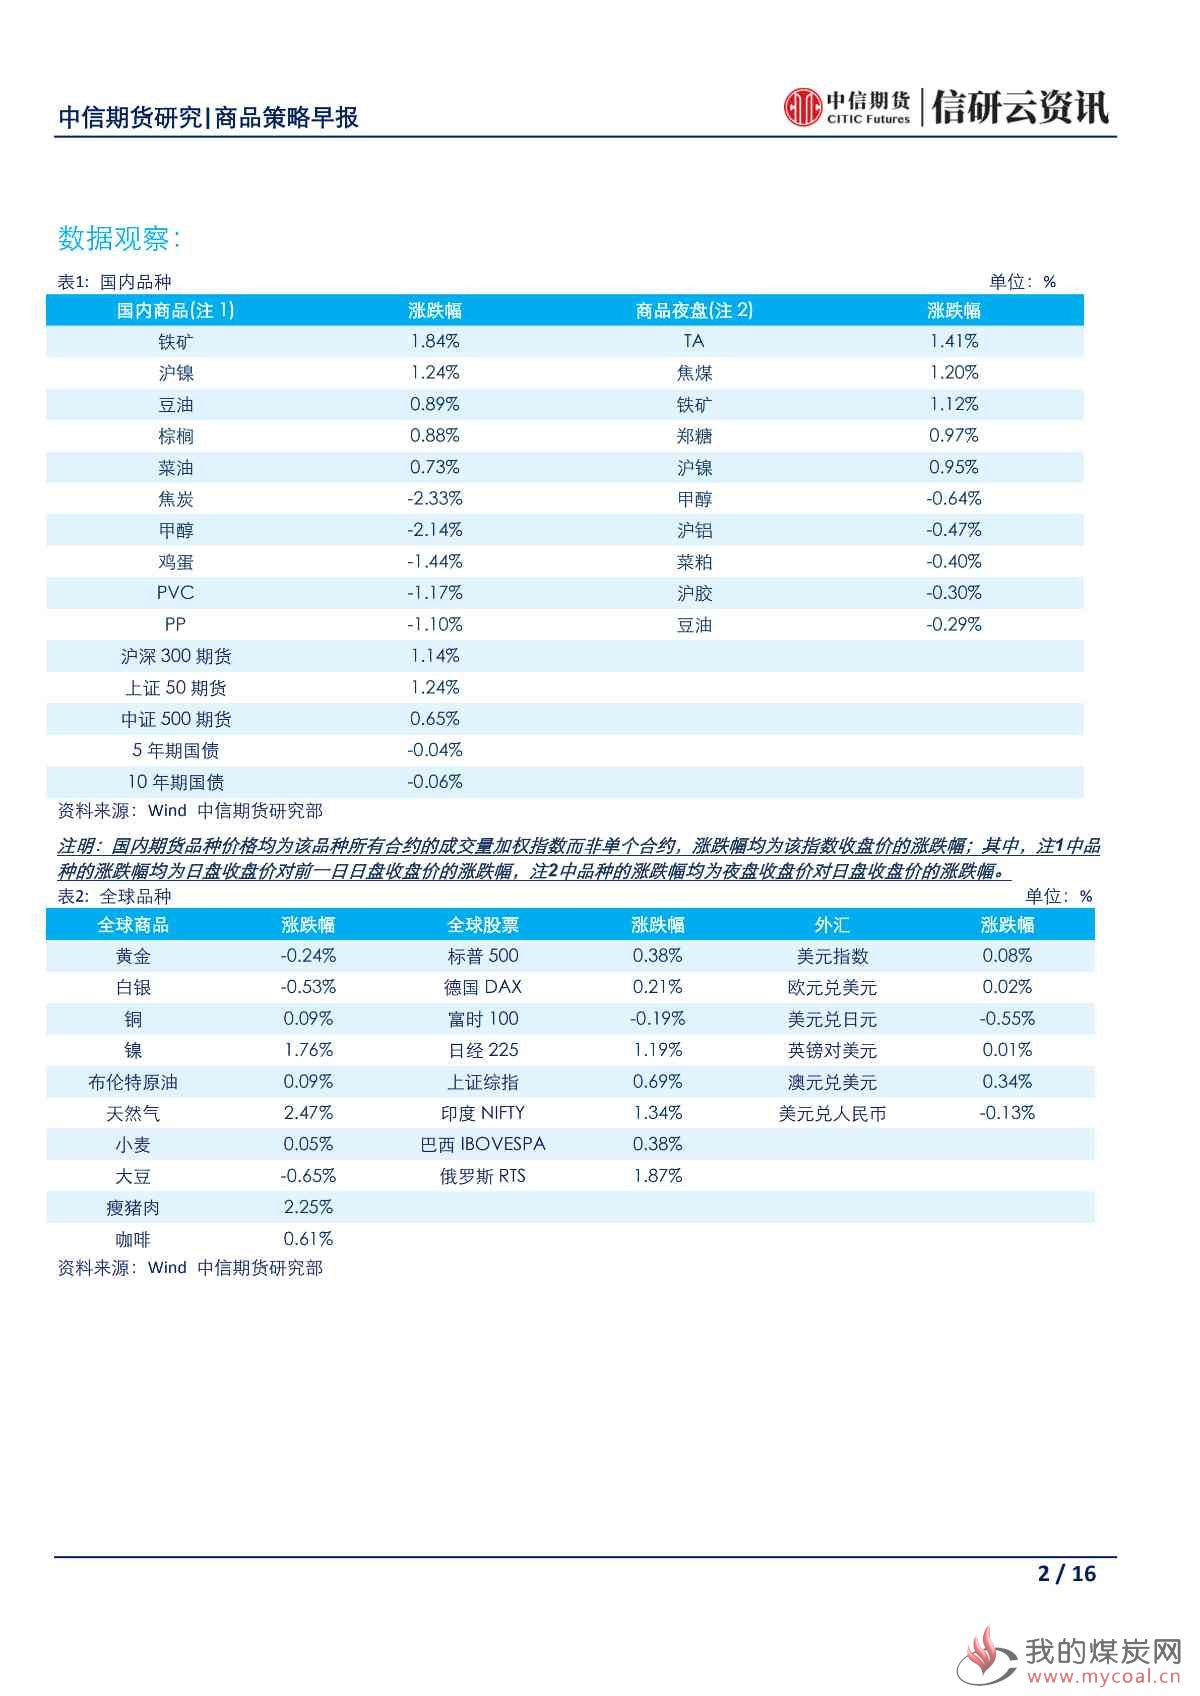 【中信期货宏观】央行再次强调稳健货币政策 市场密切关注日本G20峰会——日报20190628_01